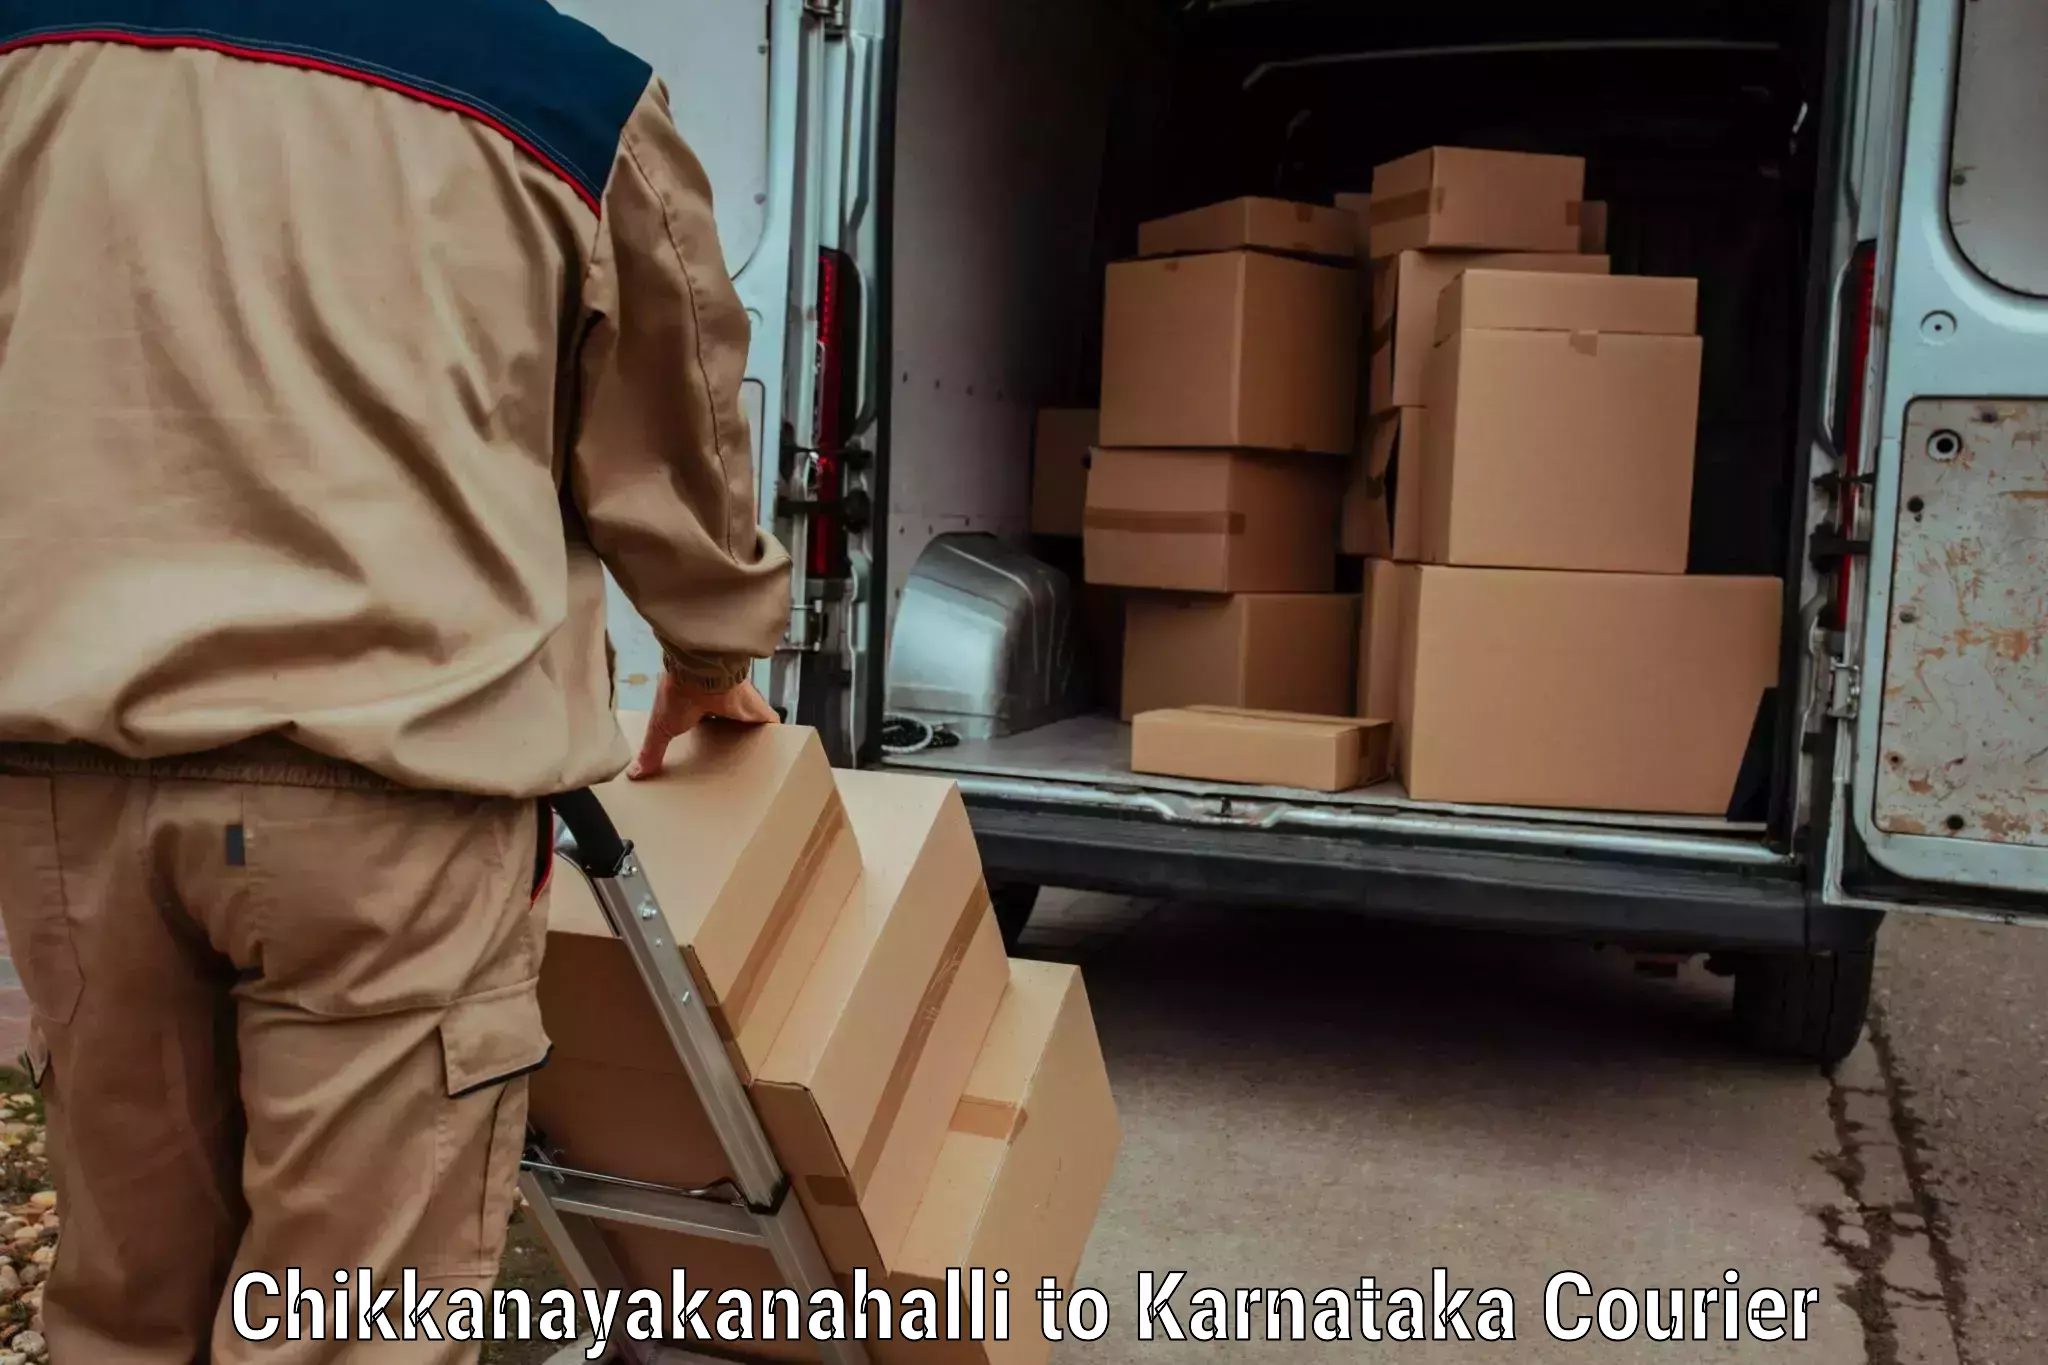 Package delivery network Chikkanayakanahalli to Yellare